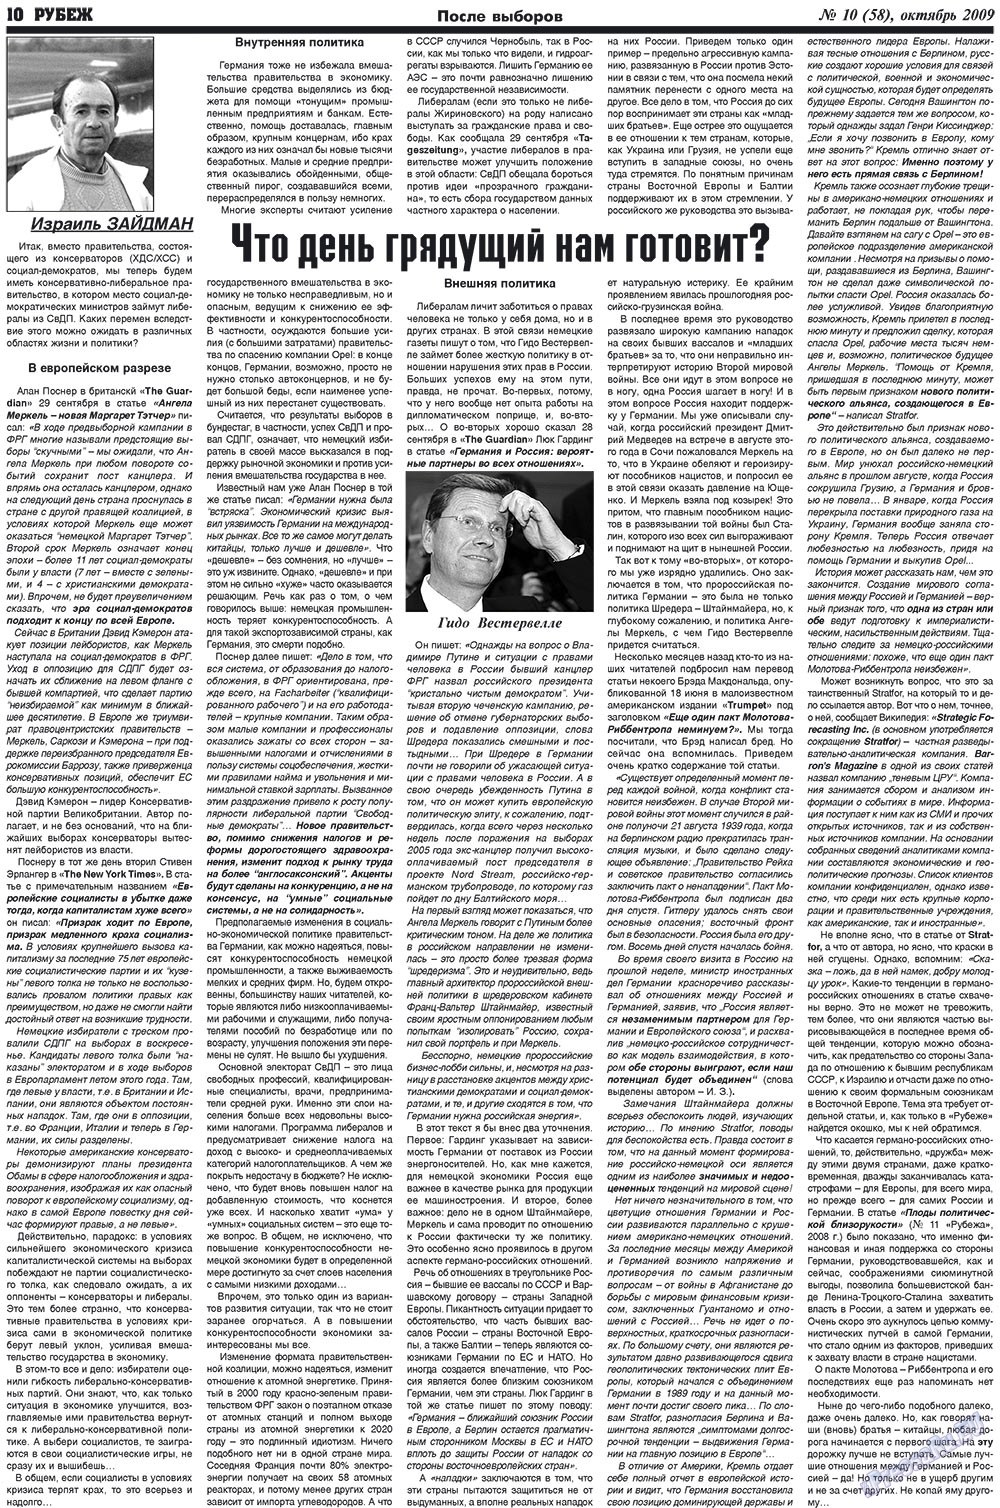 Рубеж (газета). 2009 год, номер 10, стр. 10